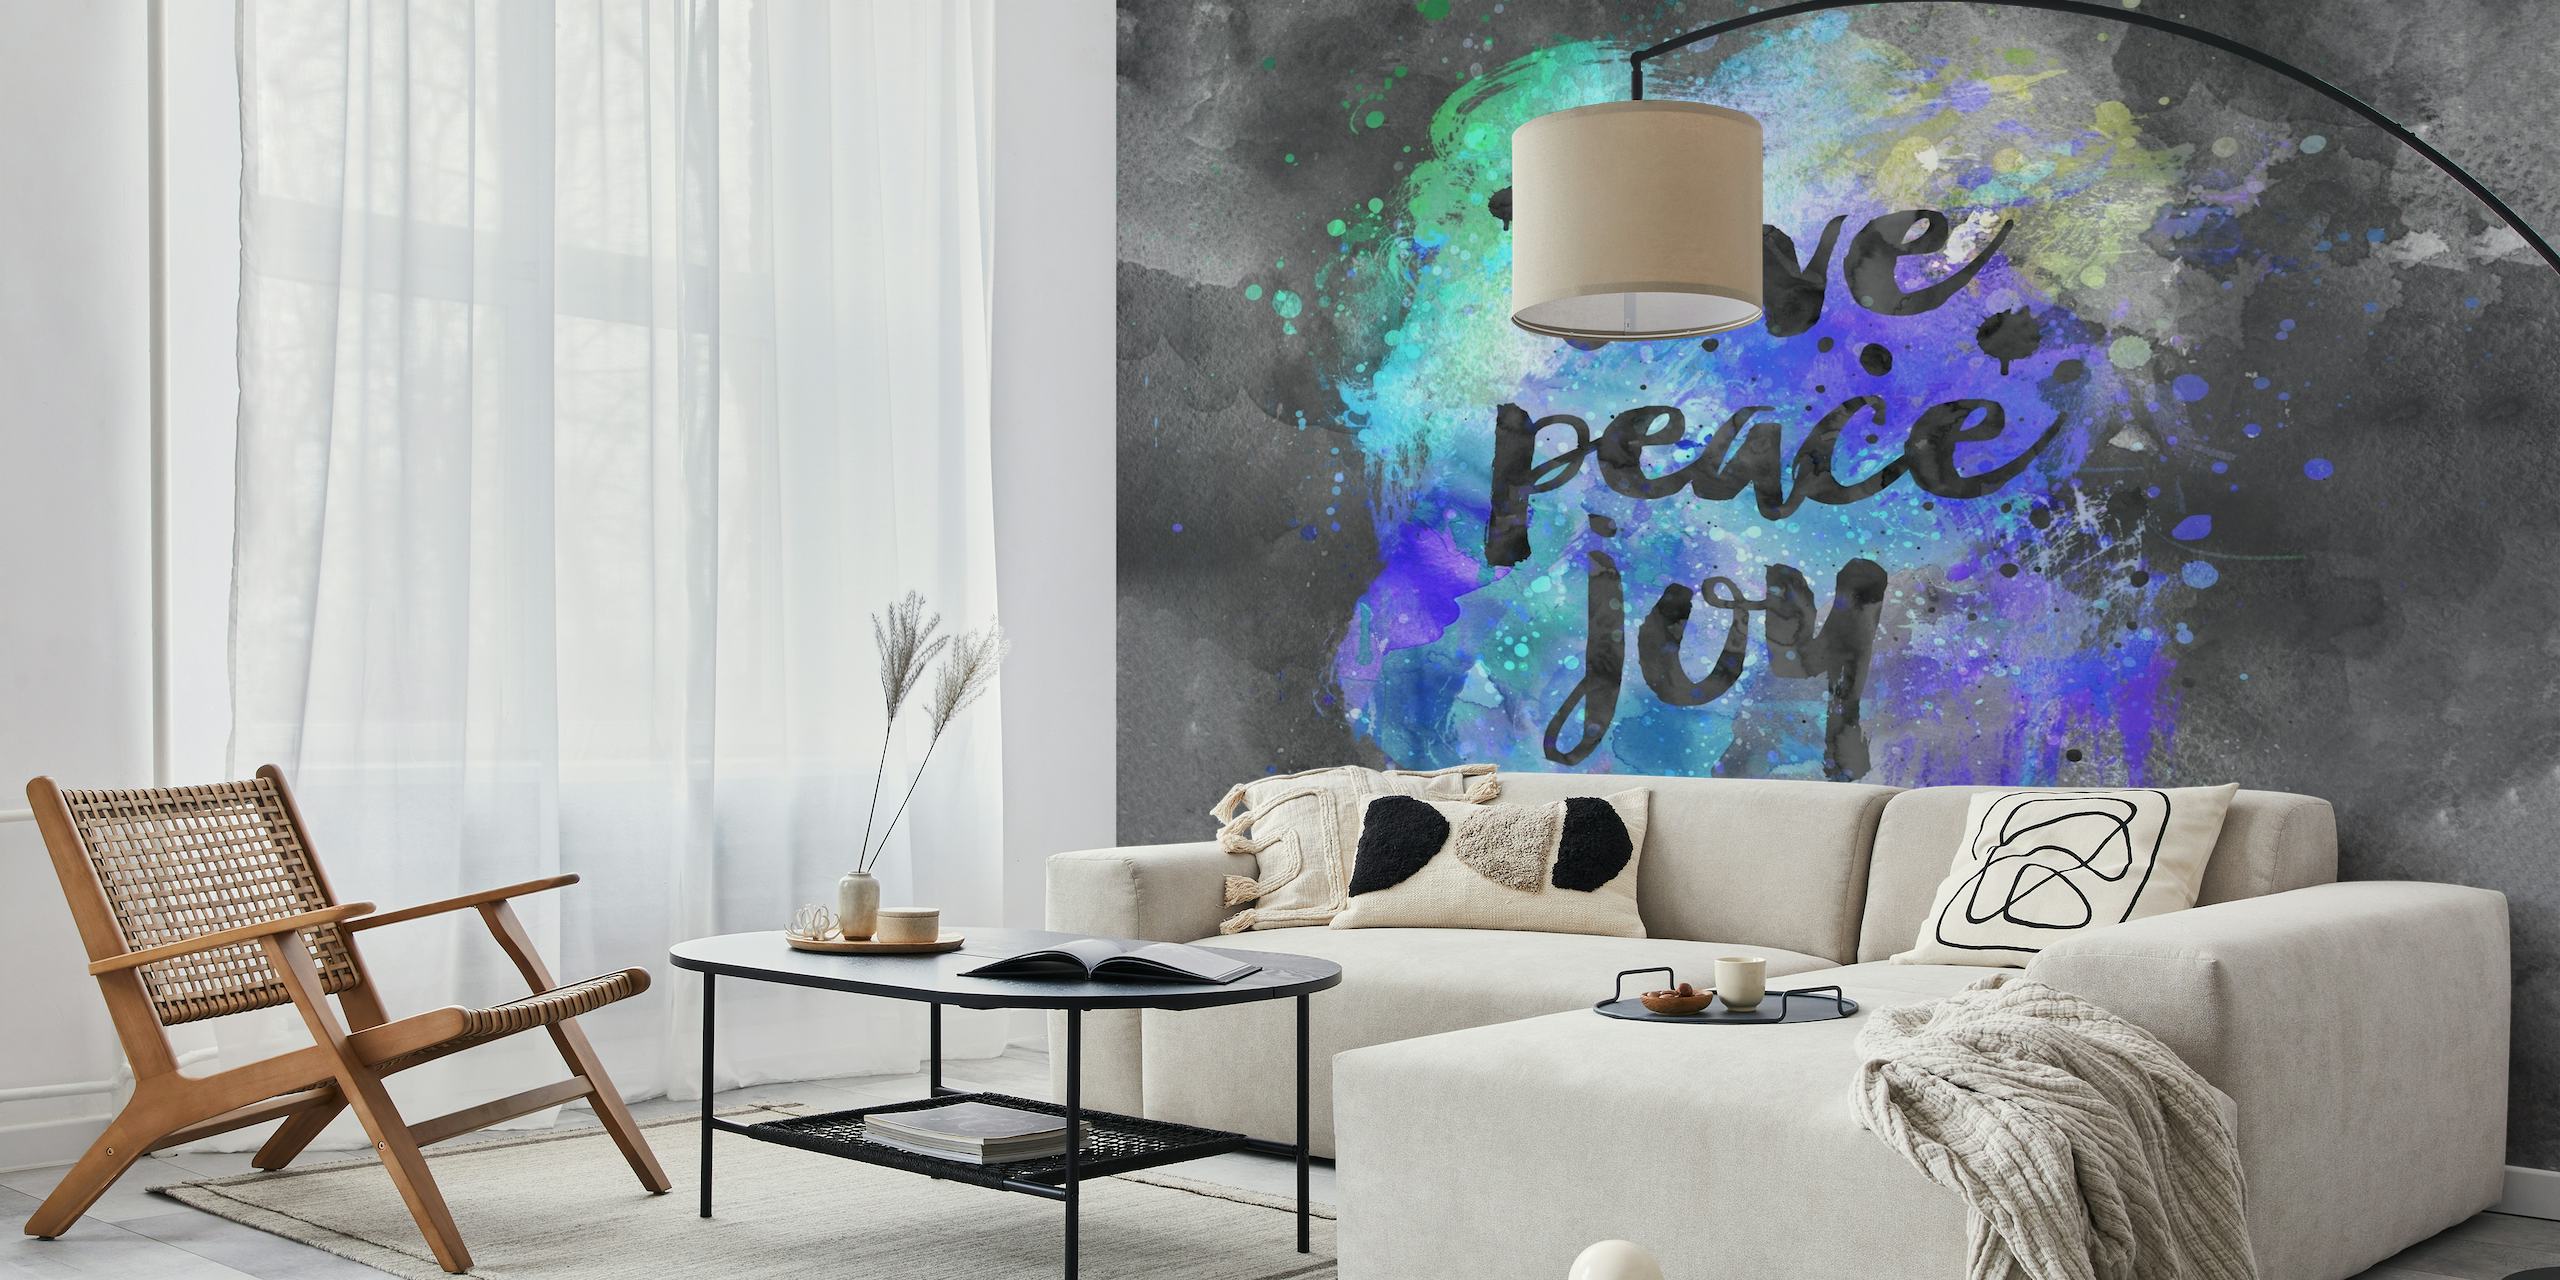 Love Peace Joy wallpaper